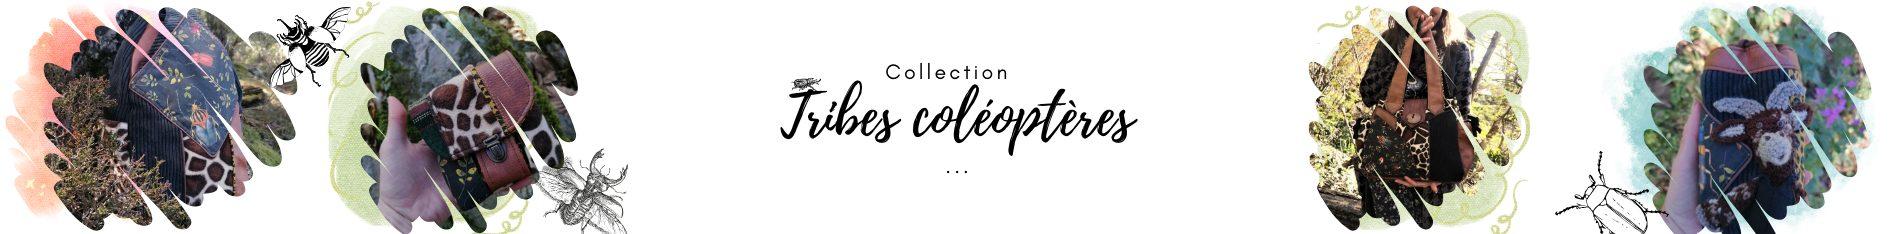 Collection Tribes Coléoptères